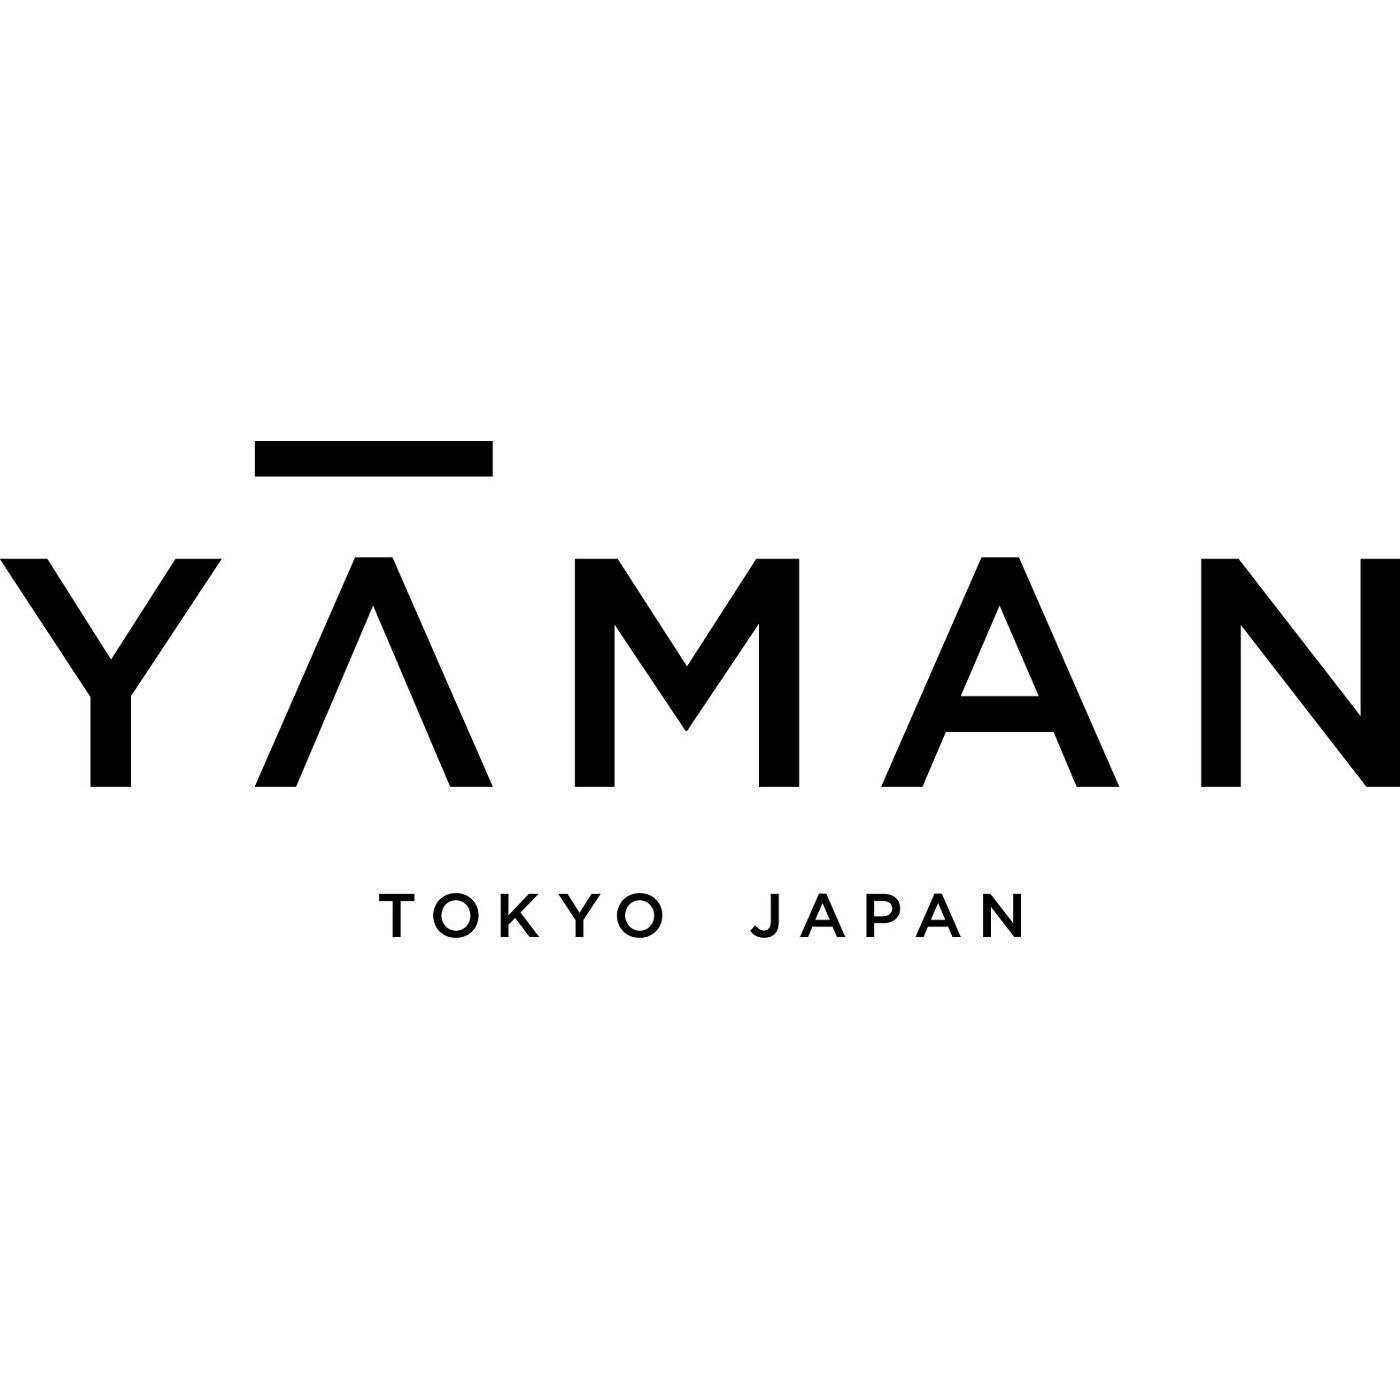 ビューティープロジェクトレンタル|【レンタル1ヵ月コース】本格派エステをおうちで　家庭用キャビテーション美容器 ヤーマン キャビスパ360〈顔・からだ用〉|[YA-MAN TOKYO JAPAN]精密機器、業務用美容機器を開発してきた美容専業メーカーとして、先端テクノロジーと常識を超えたアイデアを駆使して、お客様へ新たな美を創造する YA-MAN TOKYO JAPAN